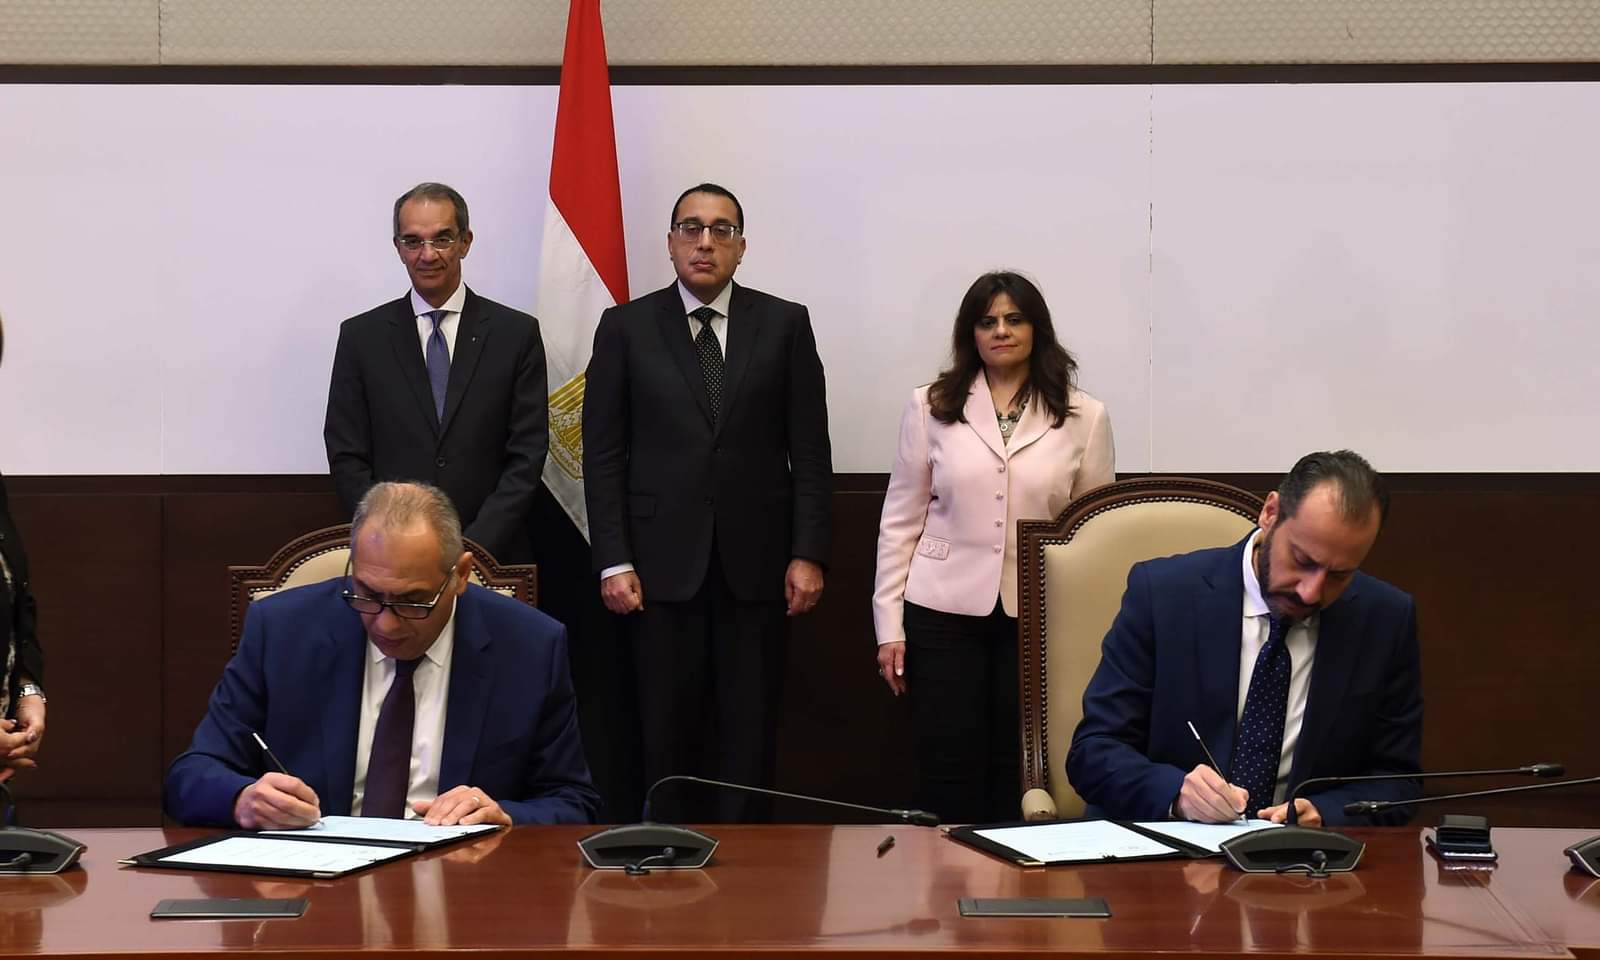 بروتوكول تعاون بين الهجرة والاتصالات لتقديم خدمات رقمية للمصريين بالخارج